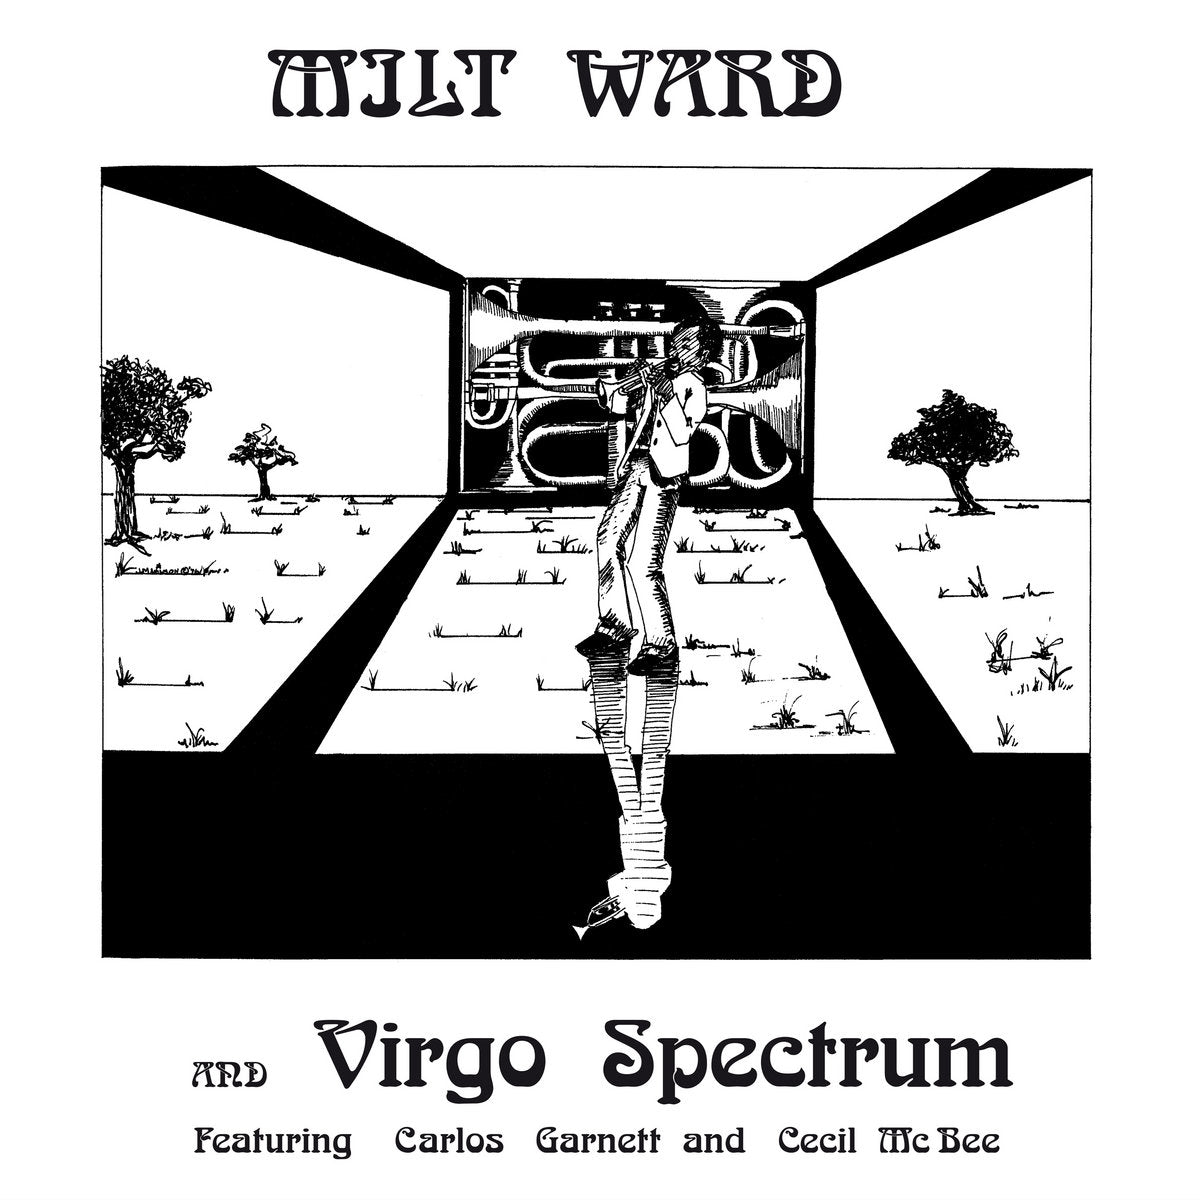 Milt Ward & Virgo Spectrum (New LP)